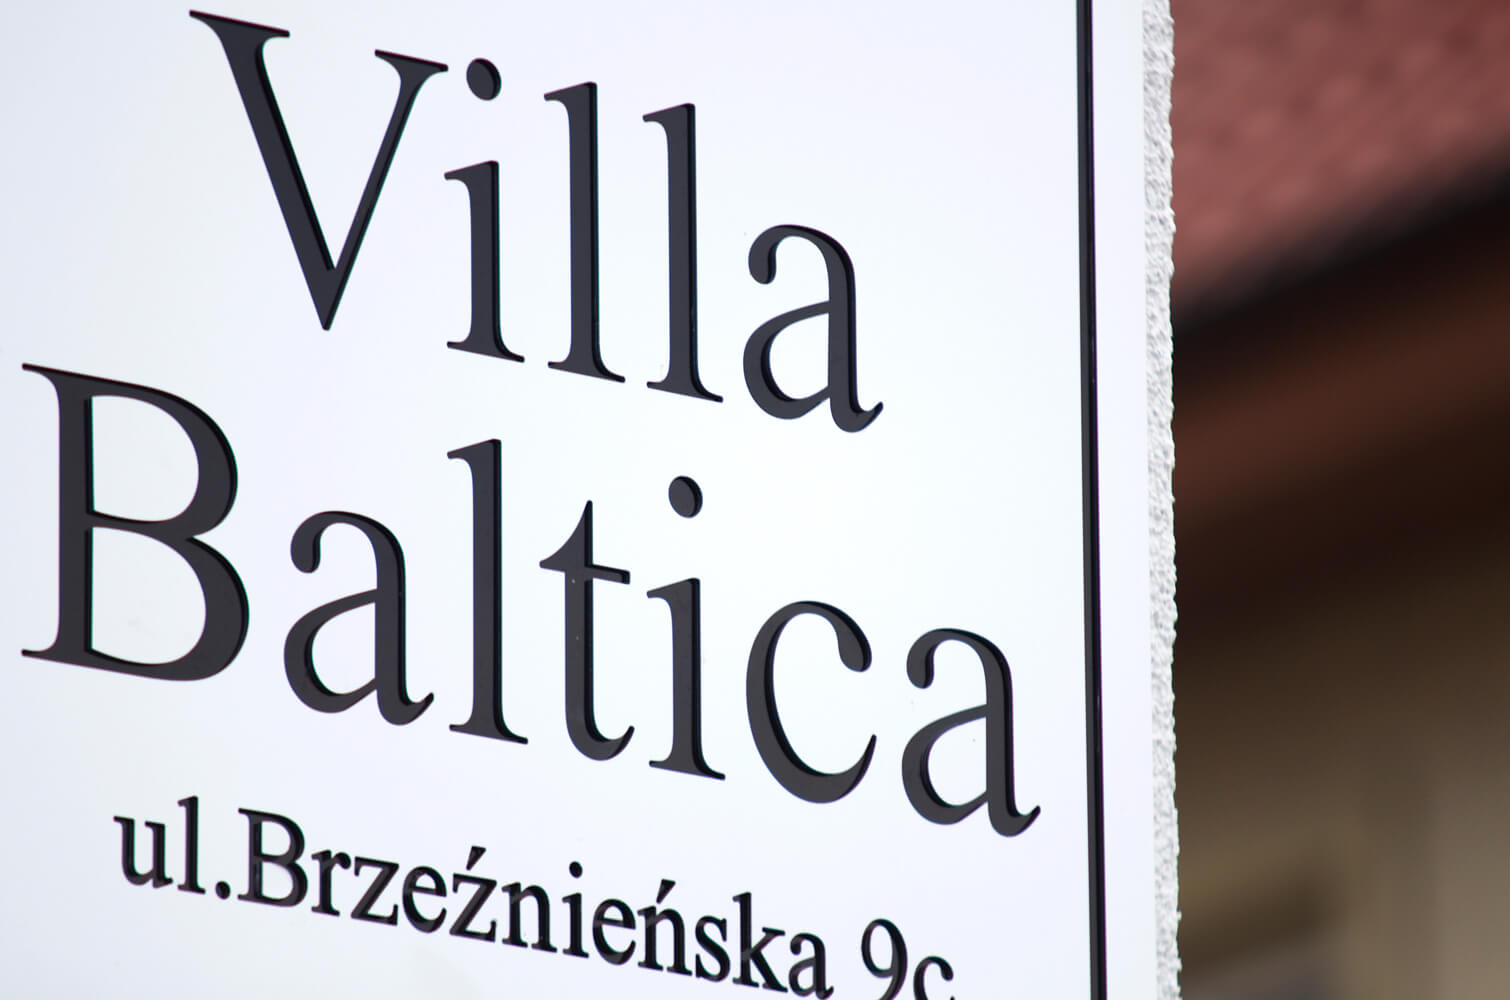 Villa Baltica - Villa Baltica - company signboard on dibond coffer in white matte color